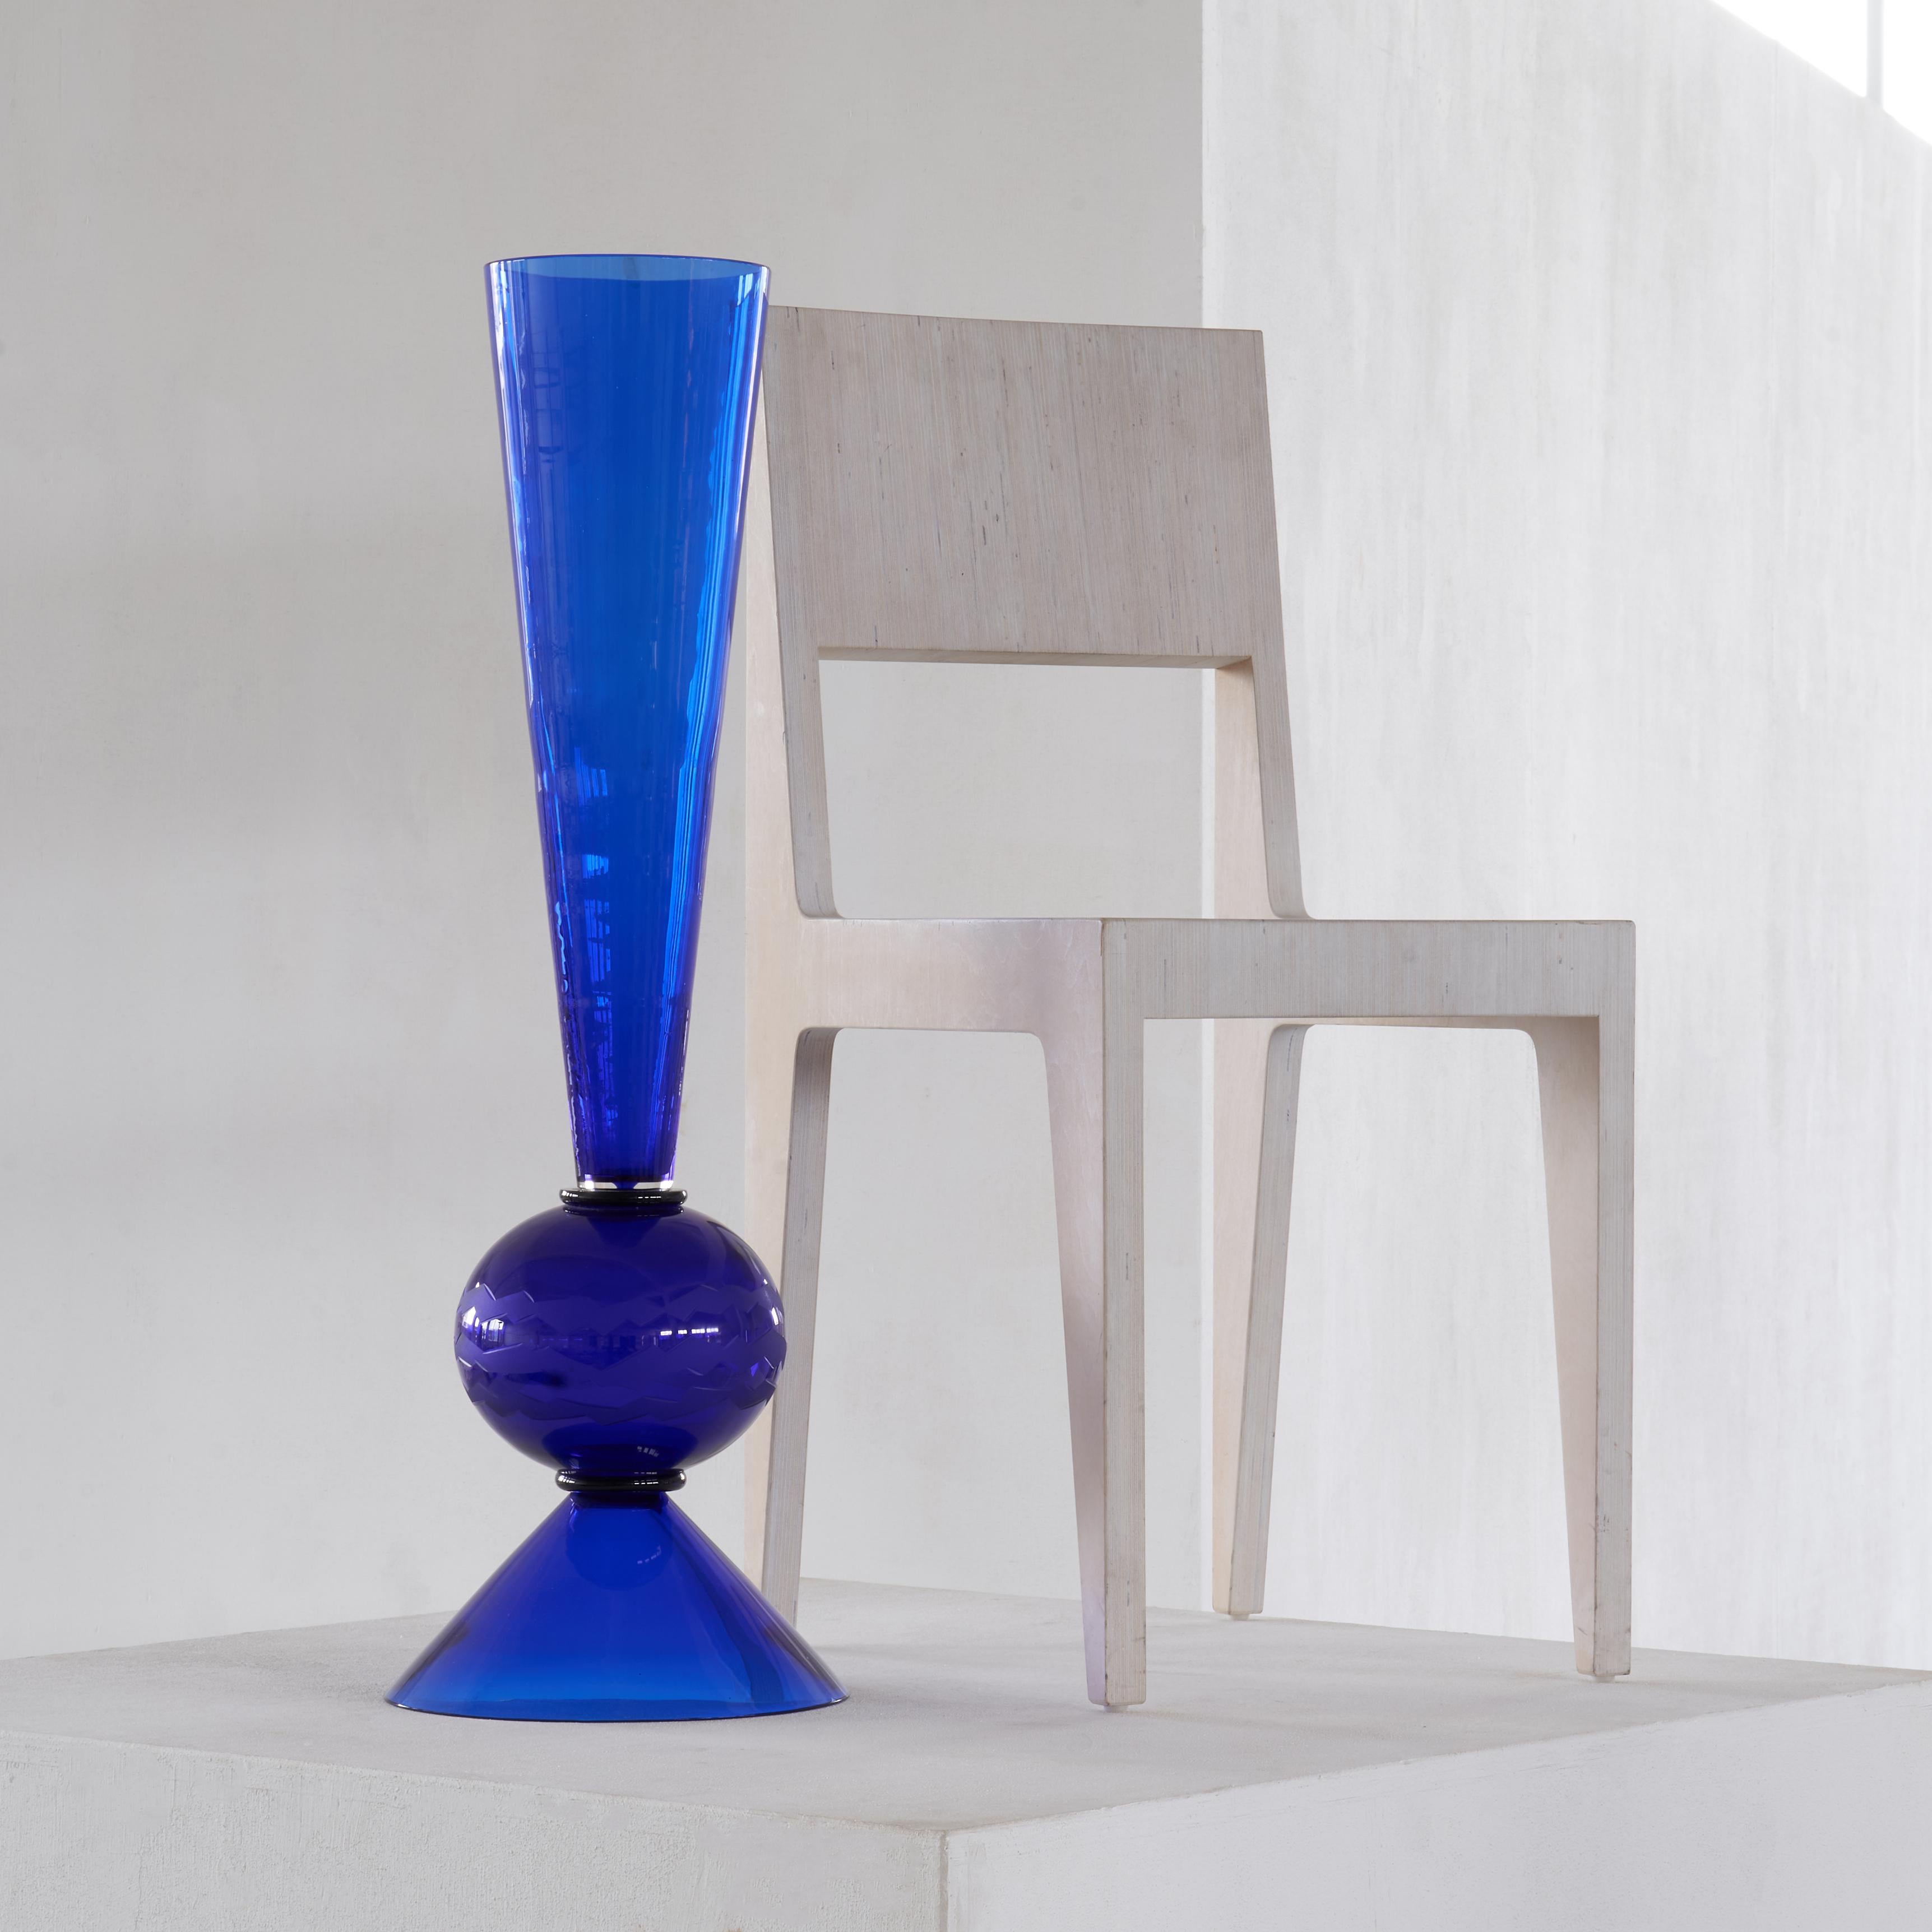 Extraordinaire et très grand (86 cm de hauteur) objet en verre bleu du célèbre designer et membre fondateur du groupe Memphis, Matteo Thun (1952 - Italie). Collection Rinascimento pour Tiffany & Co, réalisée par la maison de verre de Murano